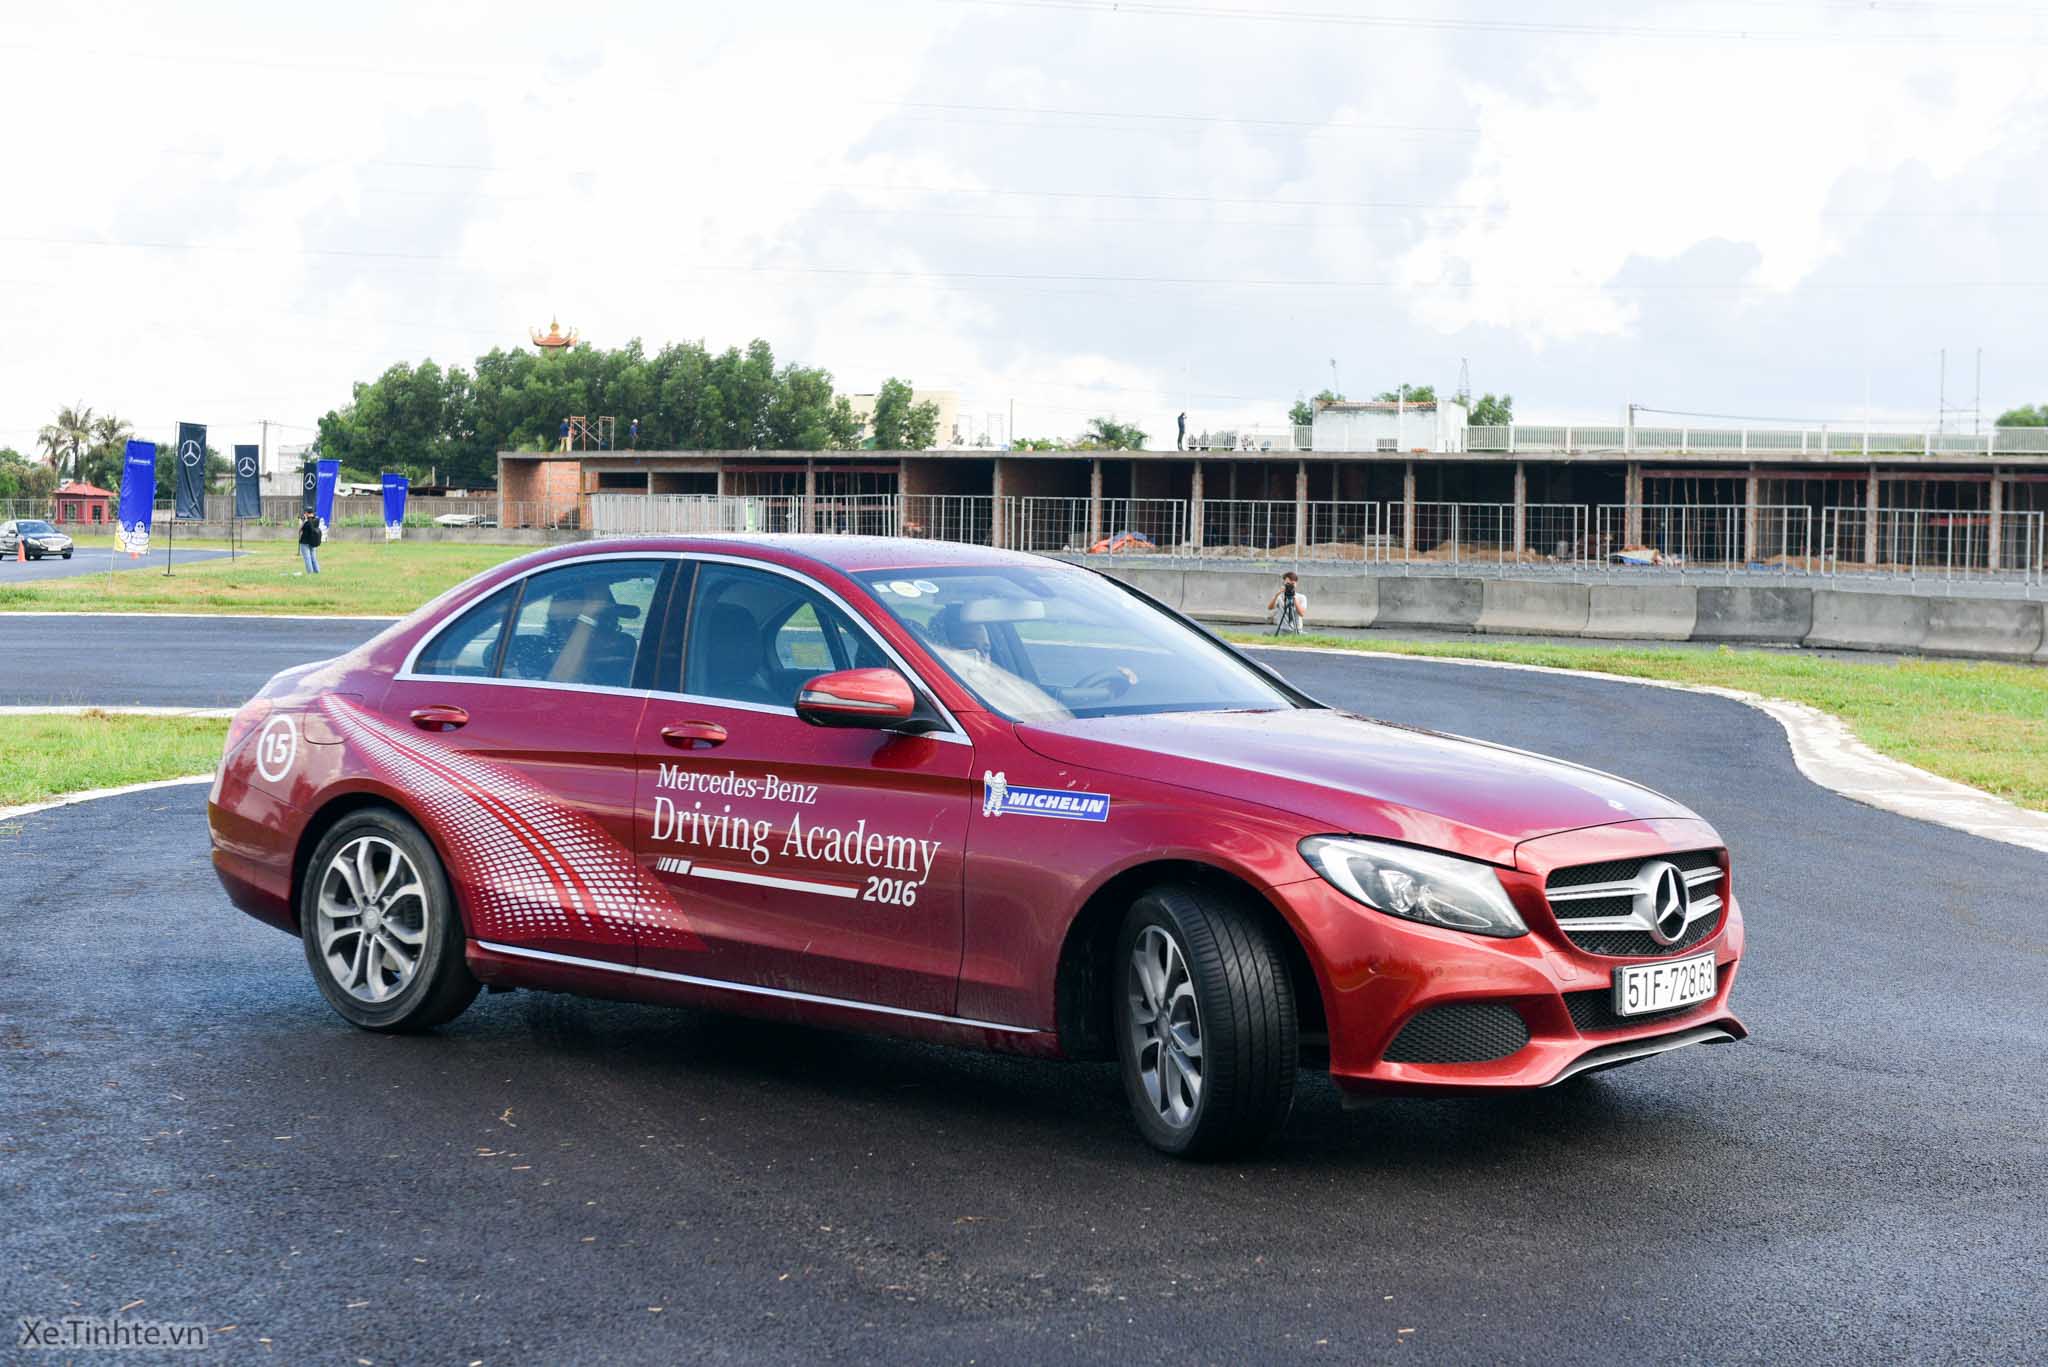 Xe.Tinhte.vn-Mercedes-Benz-Driving-Academy-2016-8.jpg